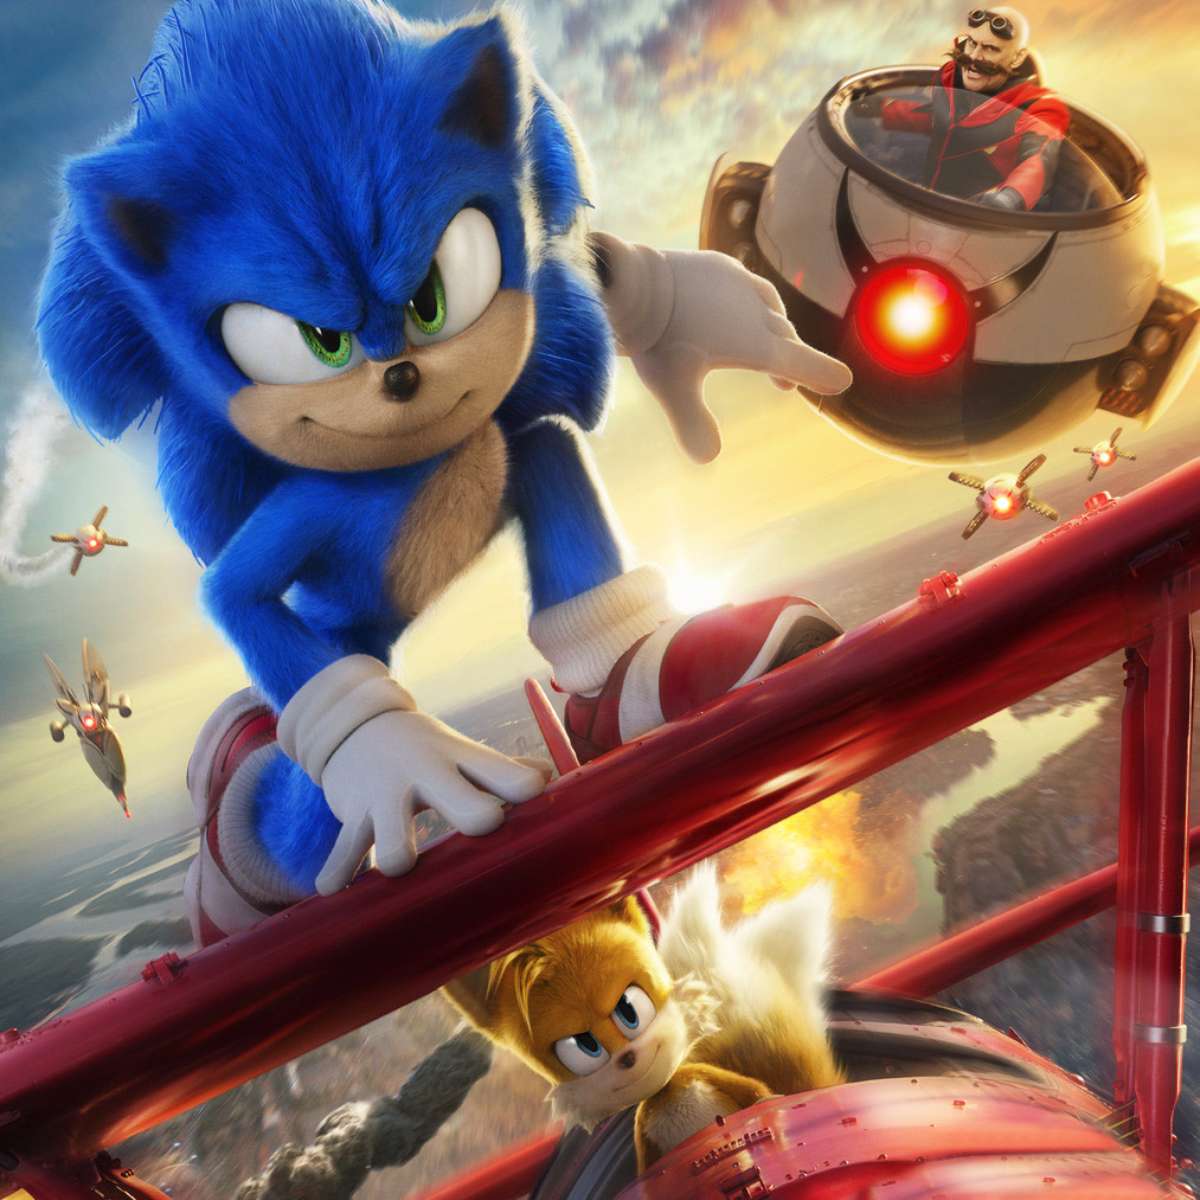 Sonic - O Filme 2 colocará Knuckles como vilão, revela sinopse